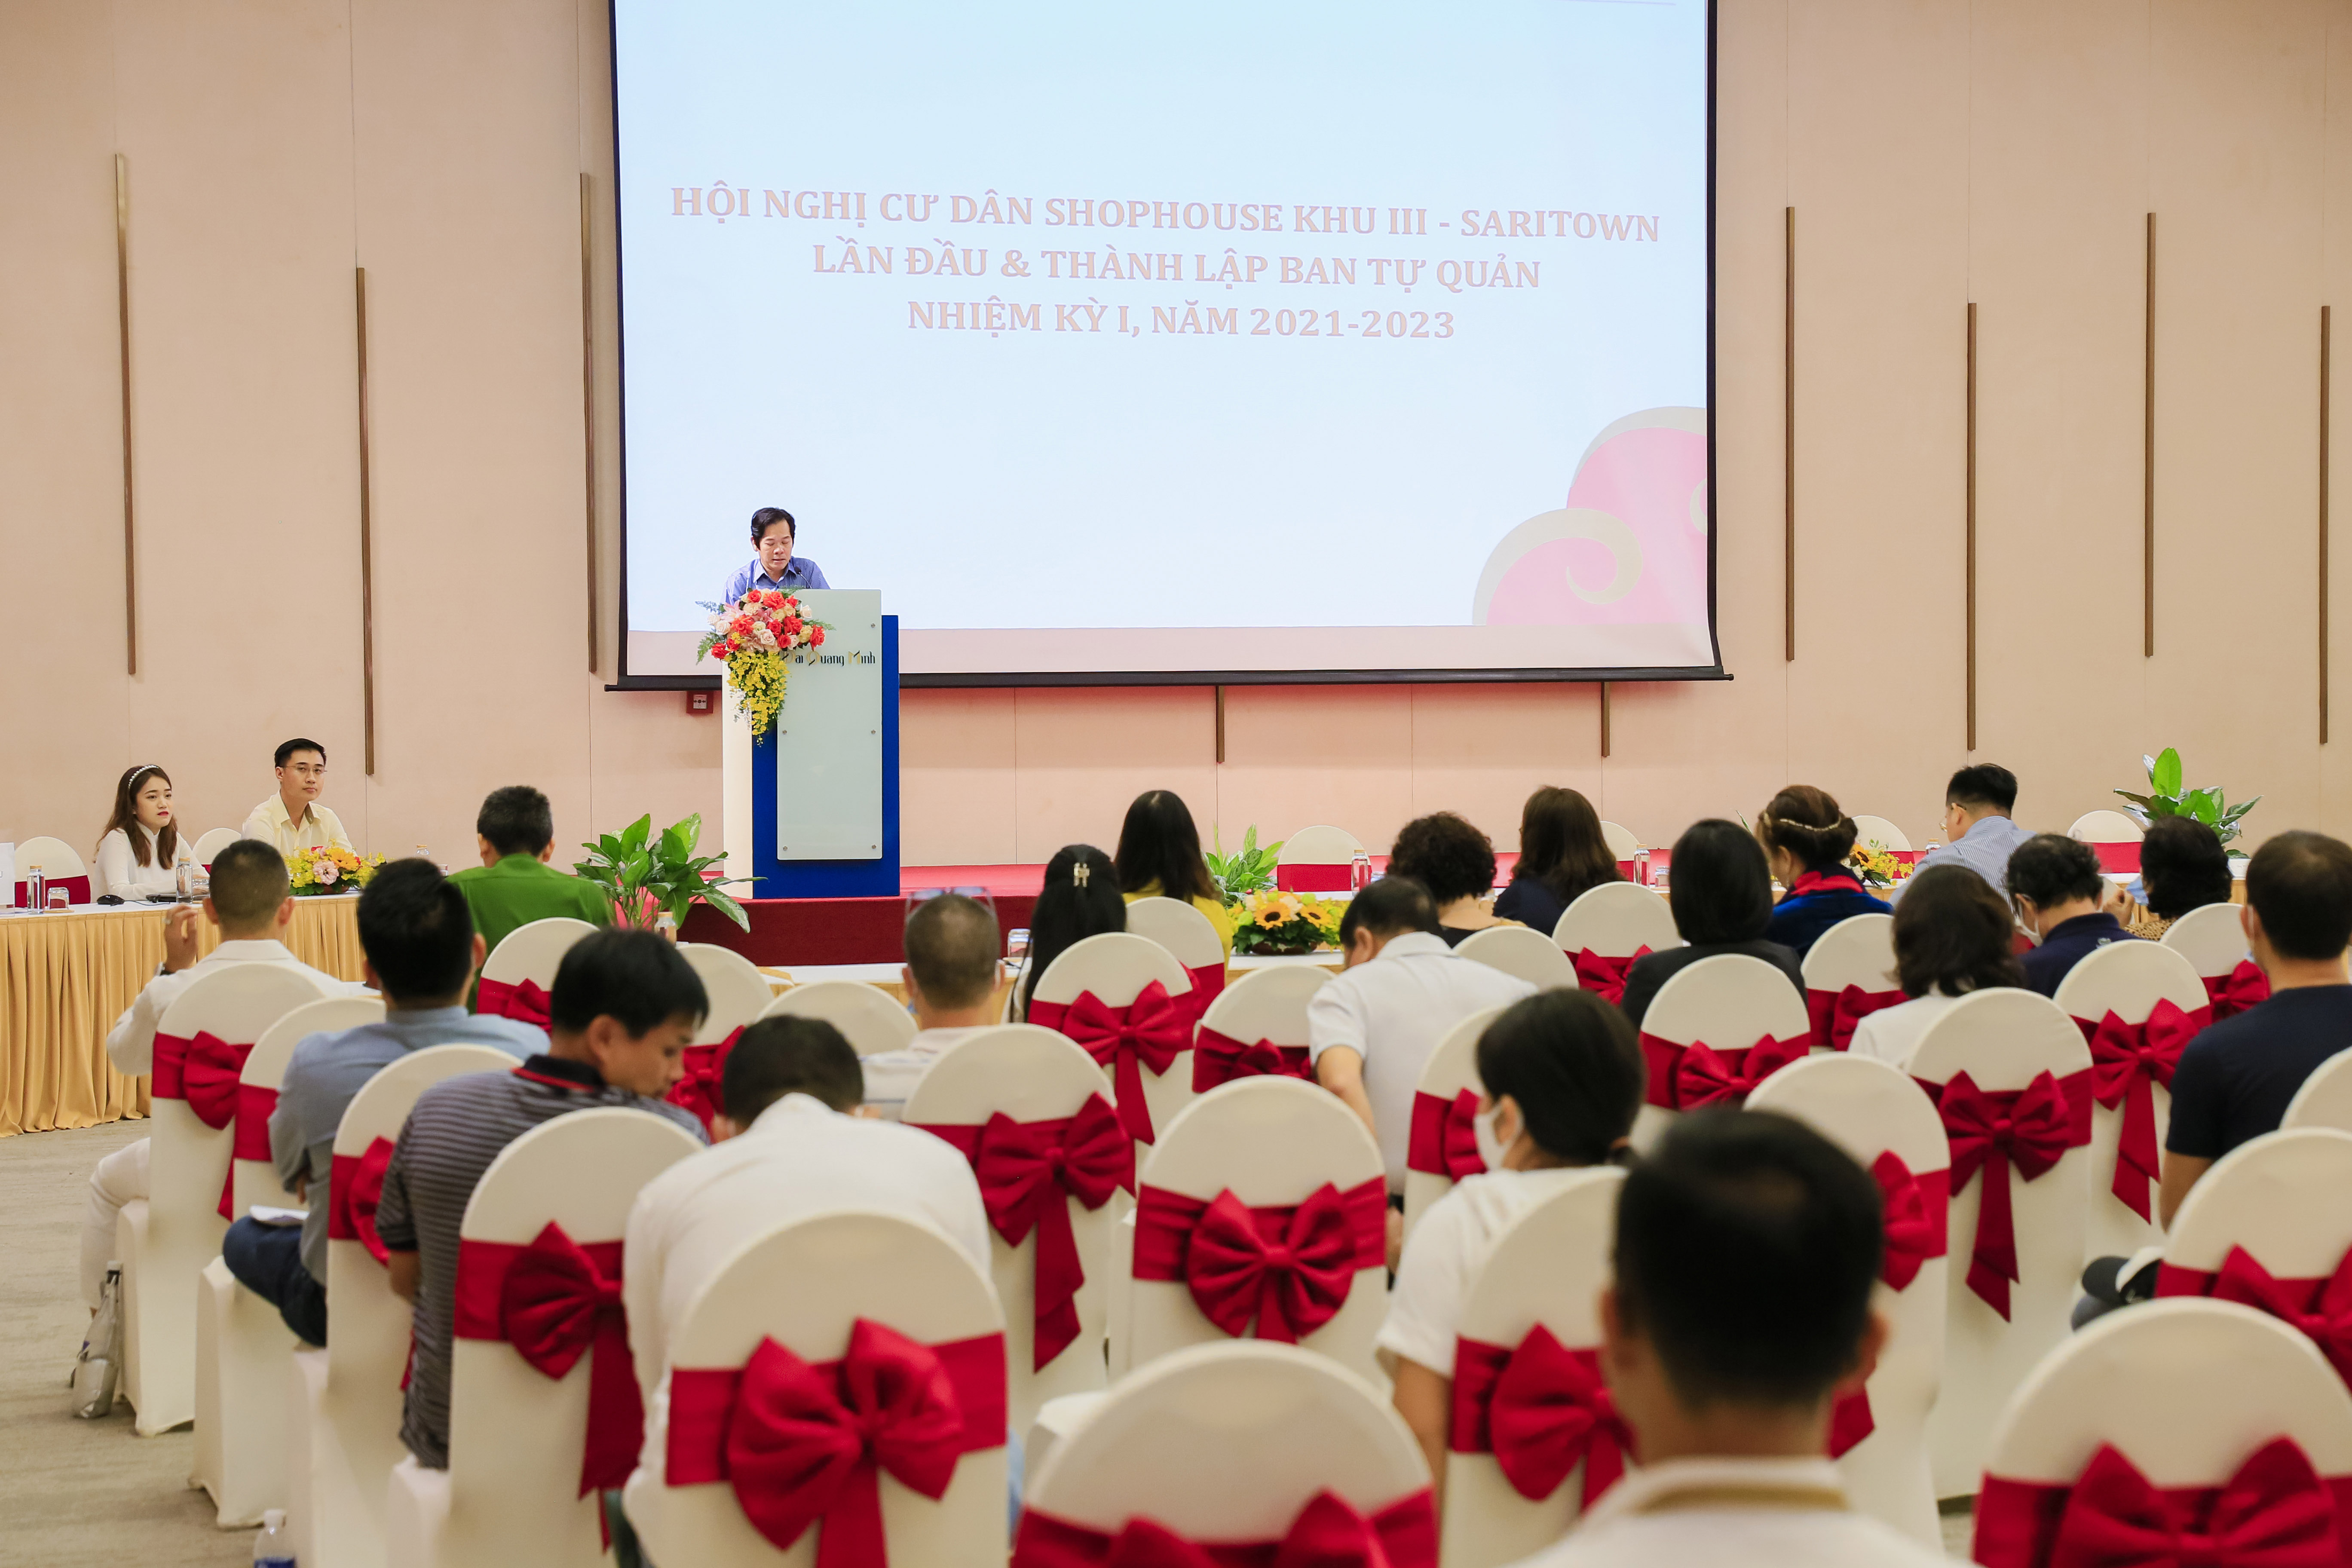 Ông Nguyễn Hoàng Tuệ – Phó Tổng Giám đốc Thường trực Công ty Đại Quang Minh phát biểu khai mạc Hội nghị.